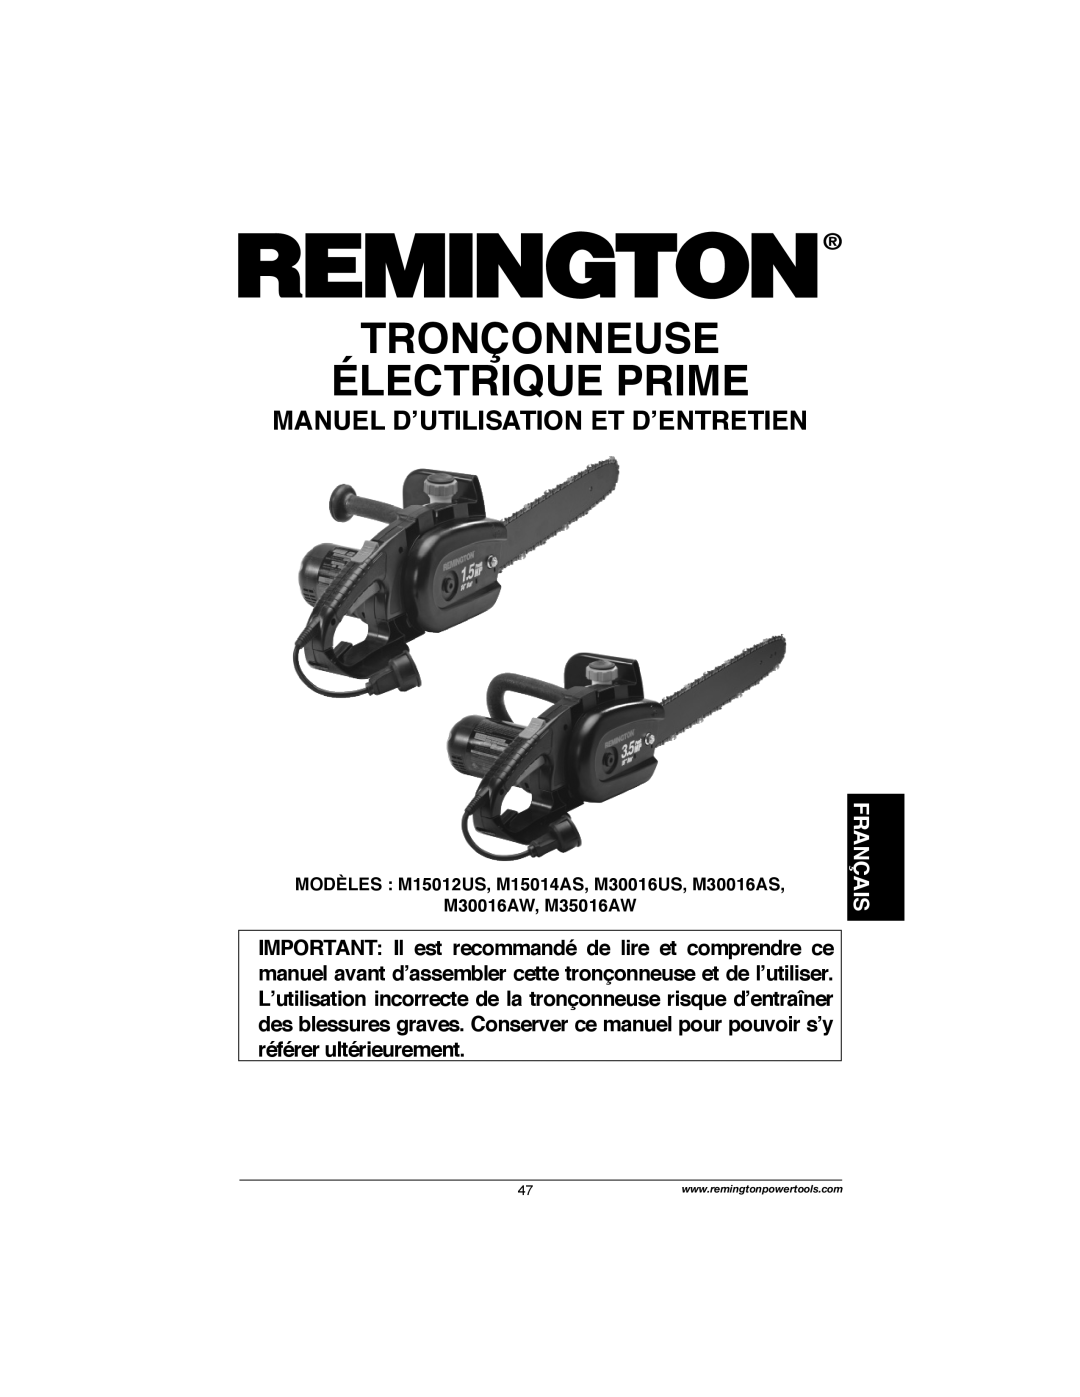 Remington Power Tools M30016AW, M30016AS Tronçonneuse Électrique Prime, Français, Manuel D’Utilisation Et D’Entretien 